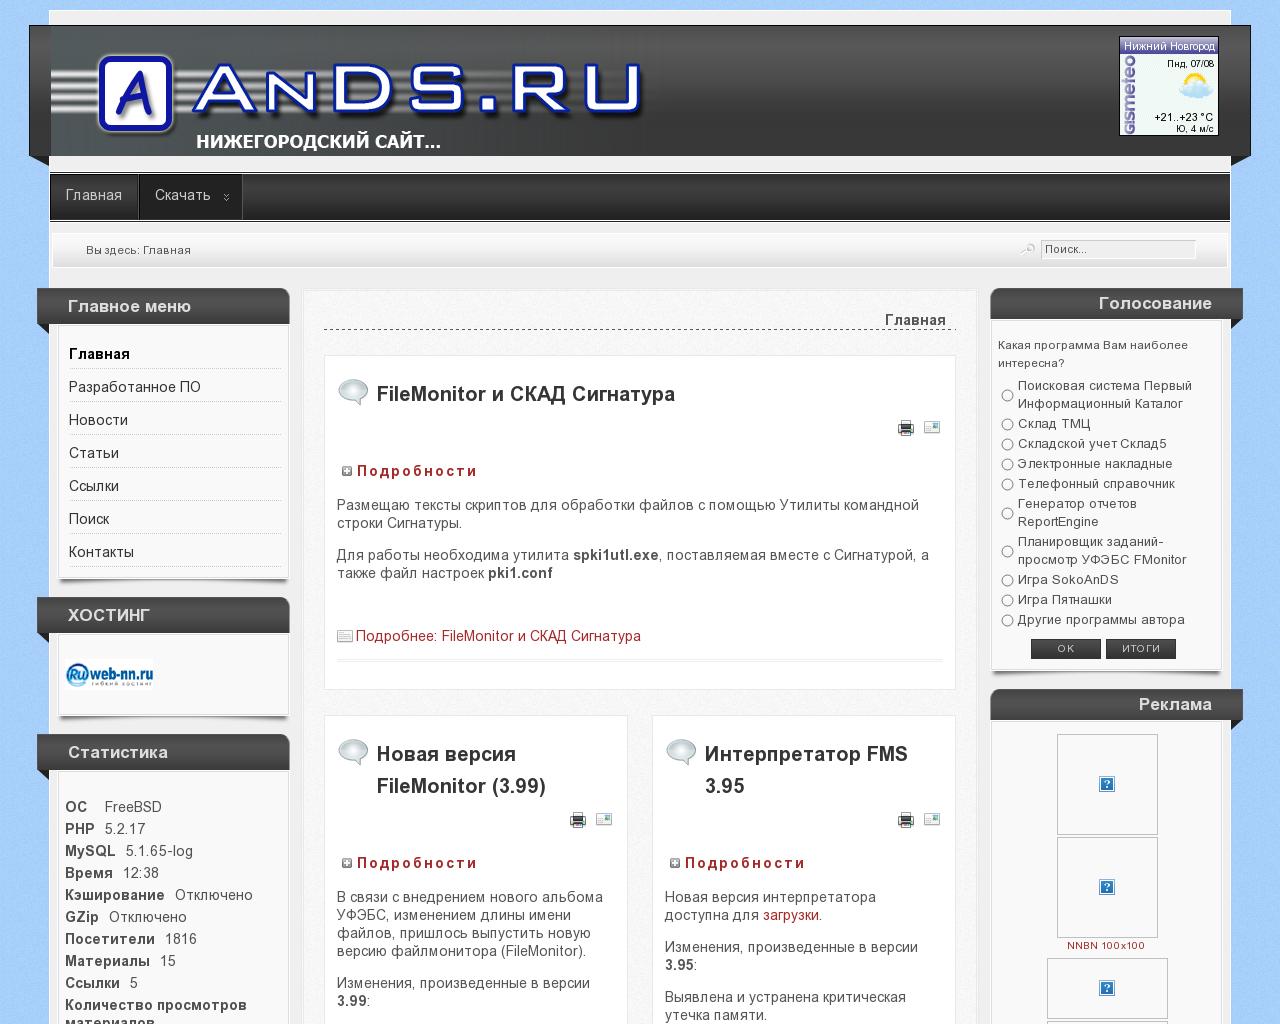 Изображение сайта ands.ru в разрешении 1280x1024